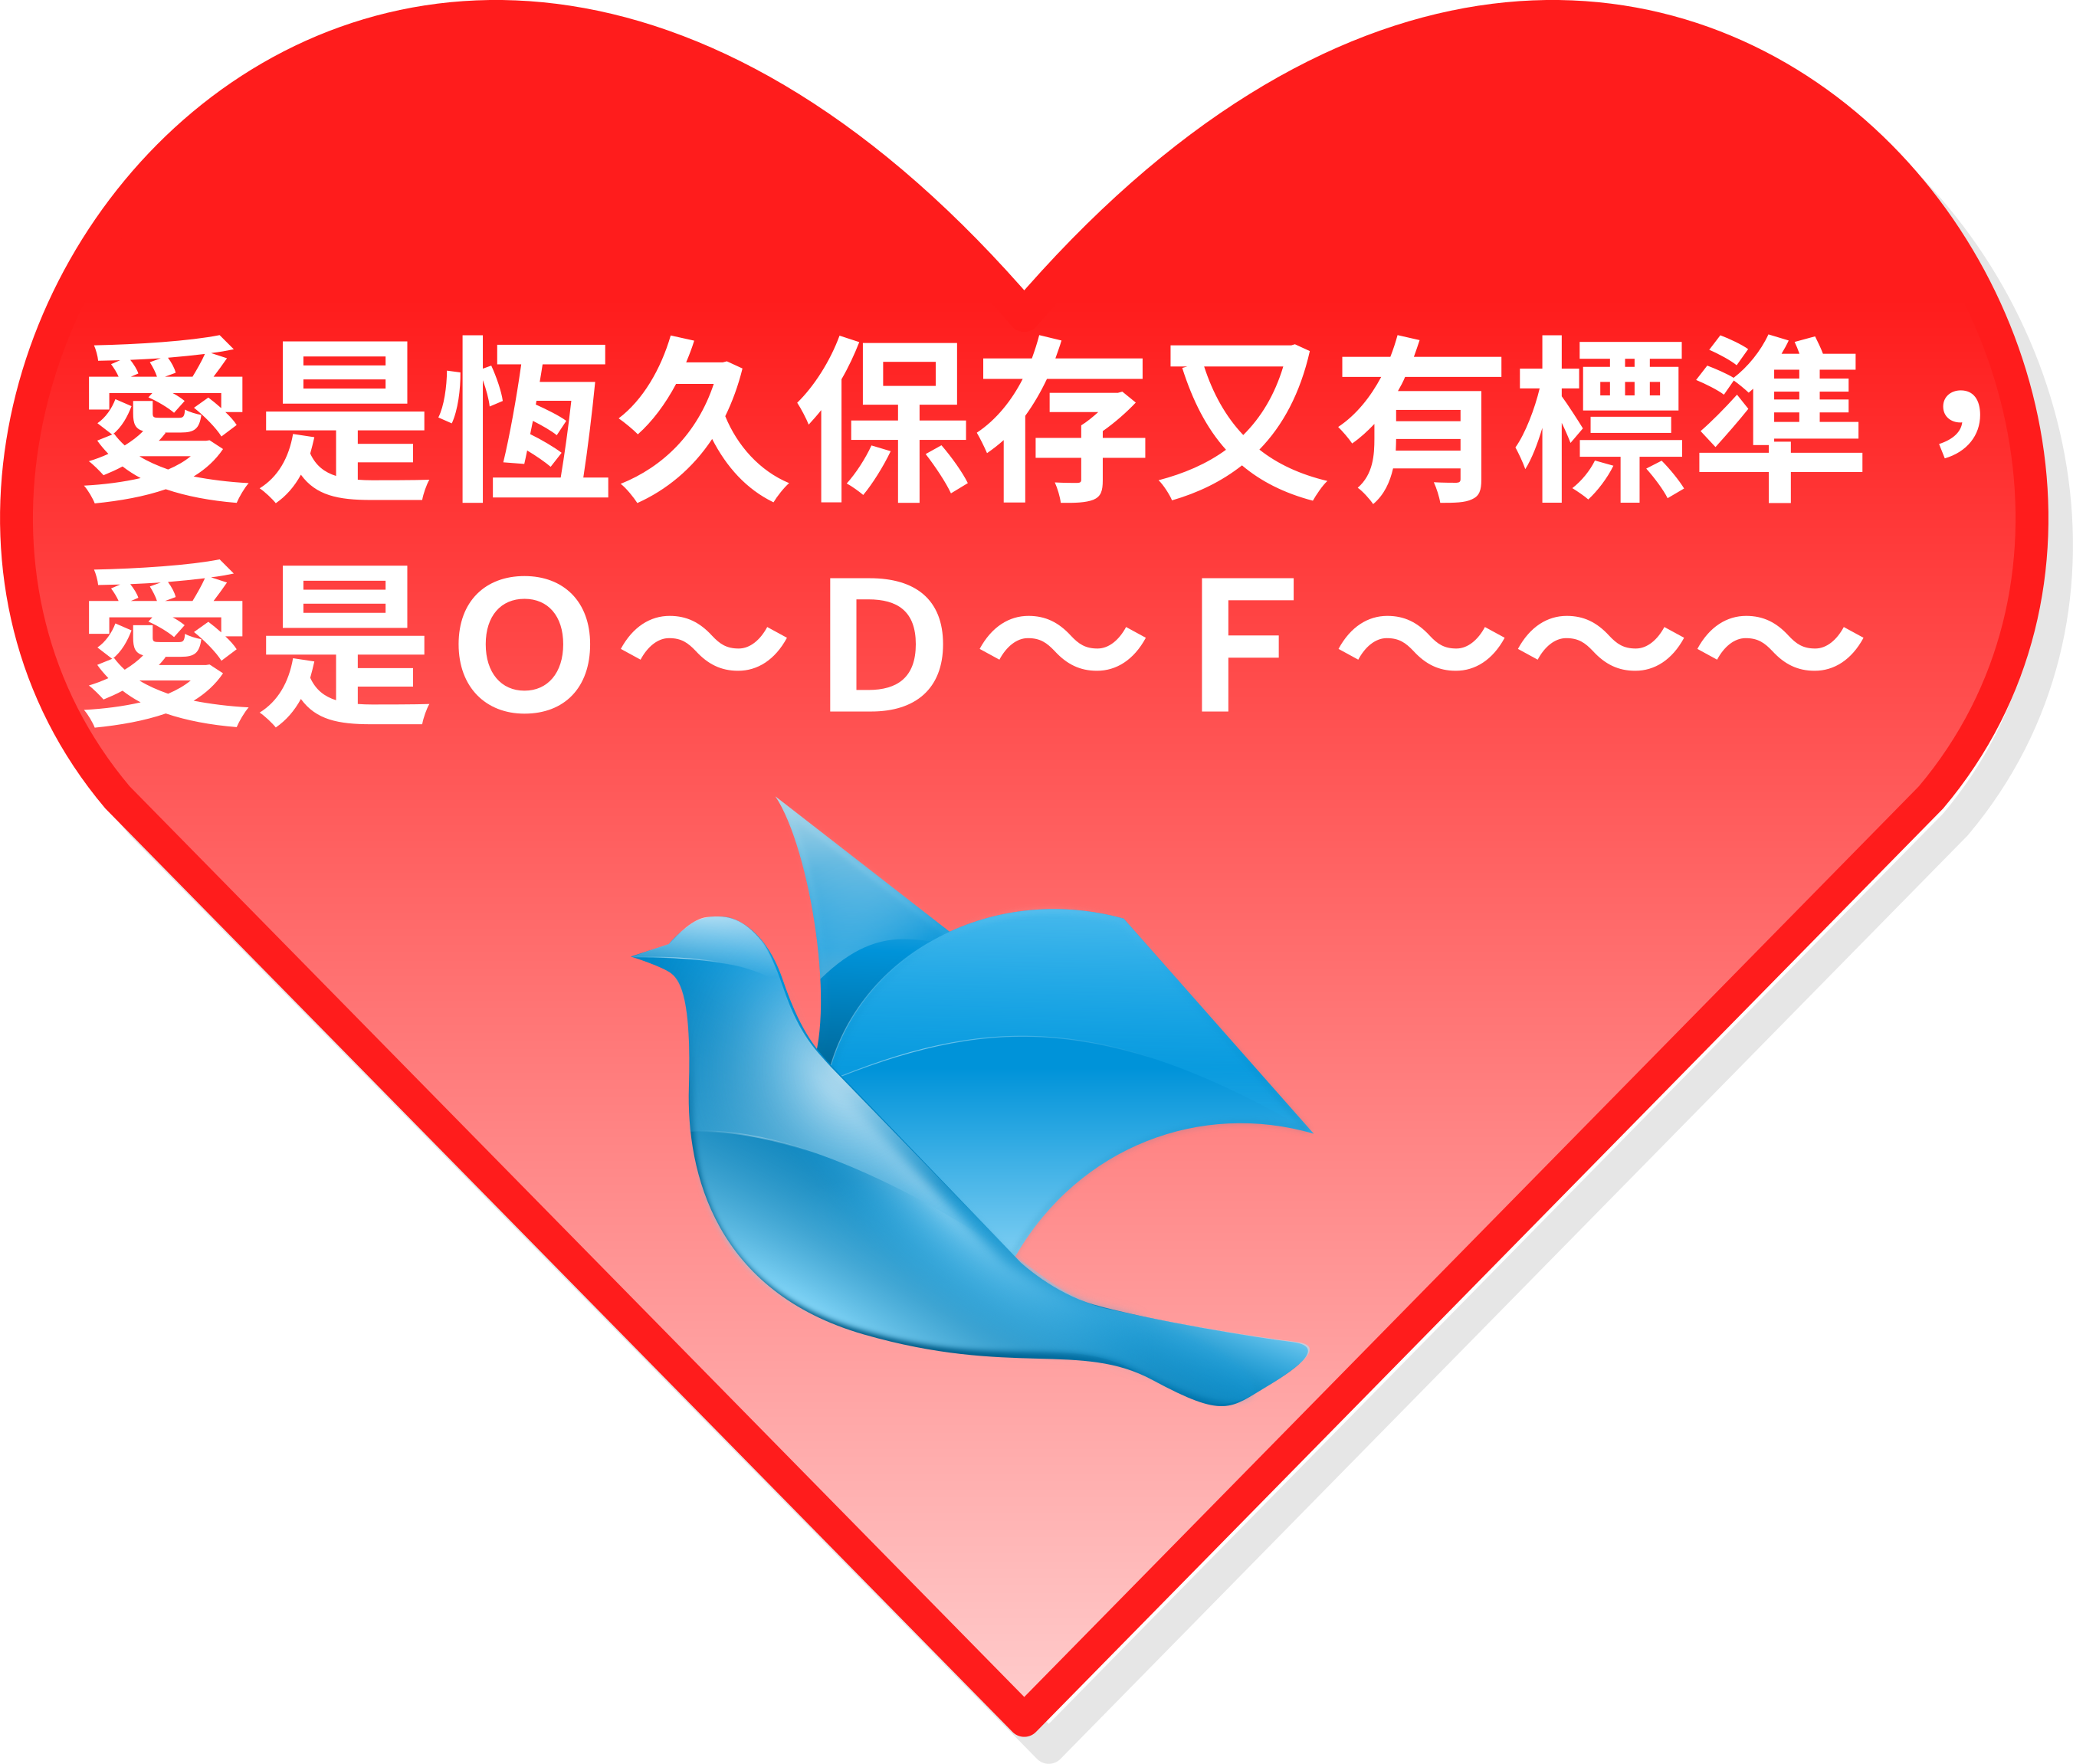 愛是 ODF 貼紙